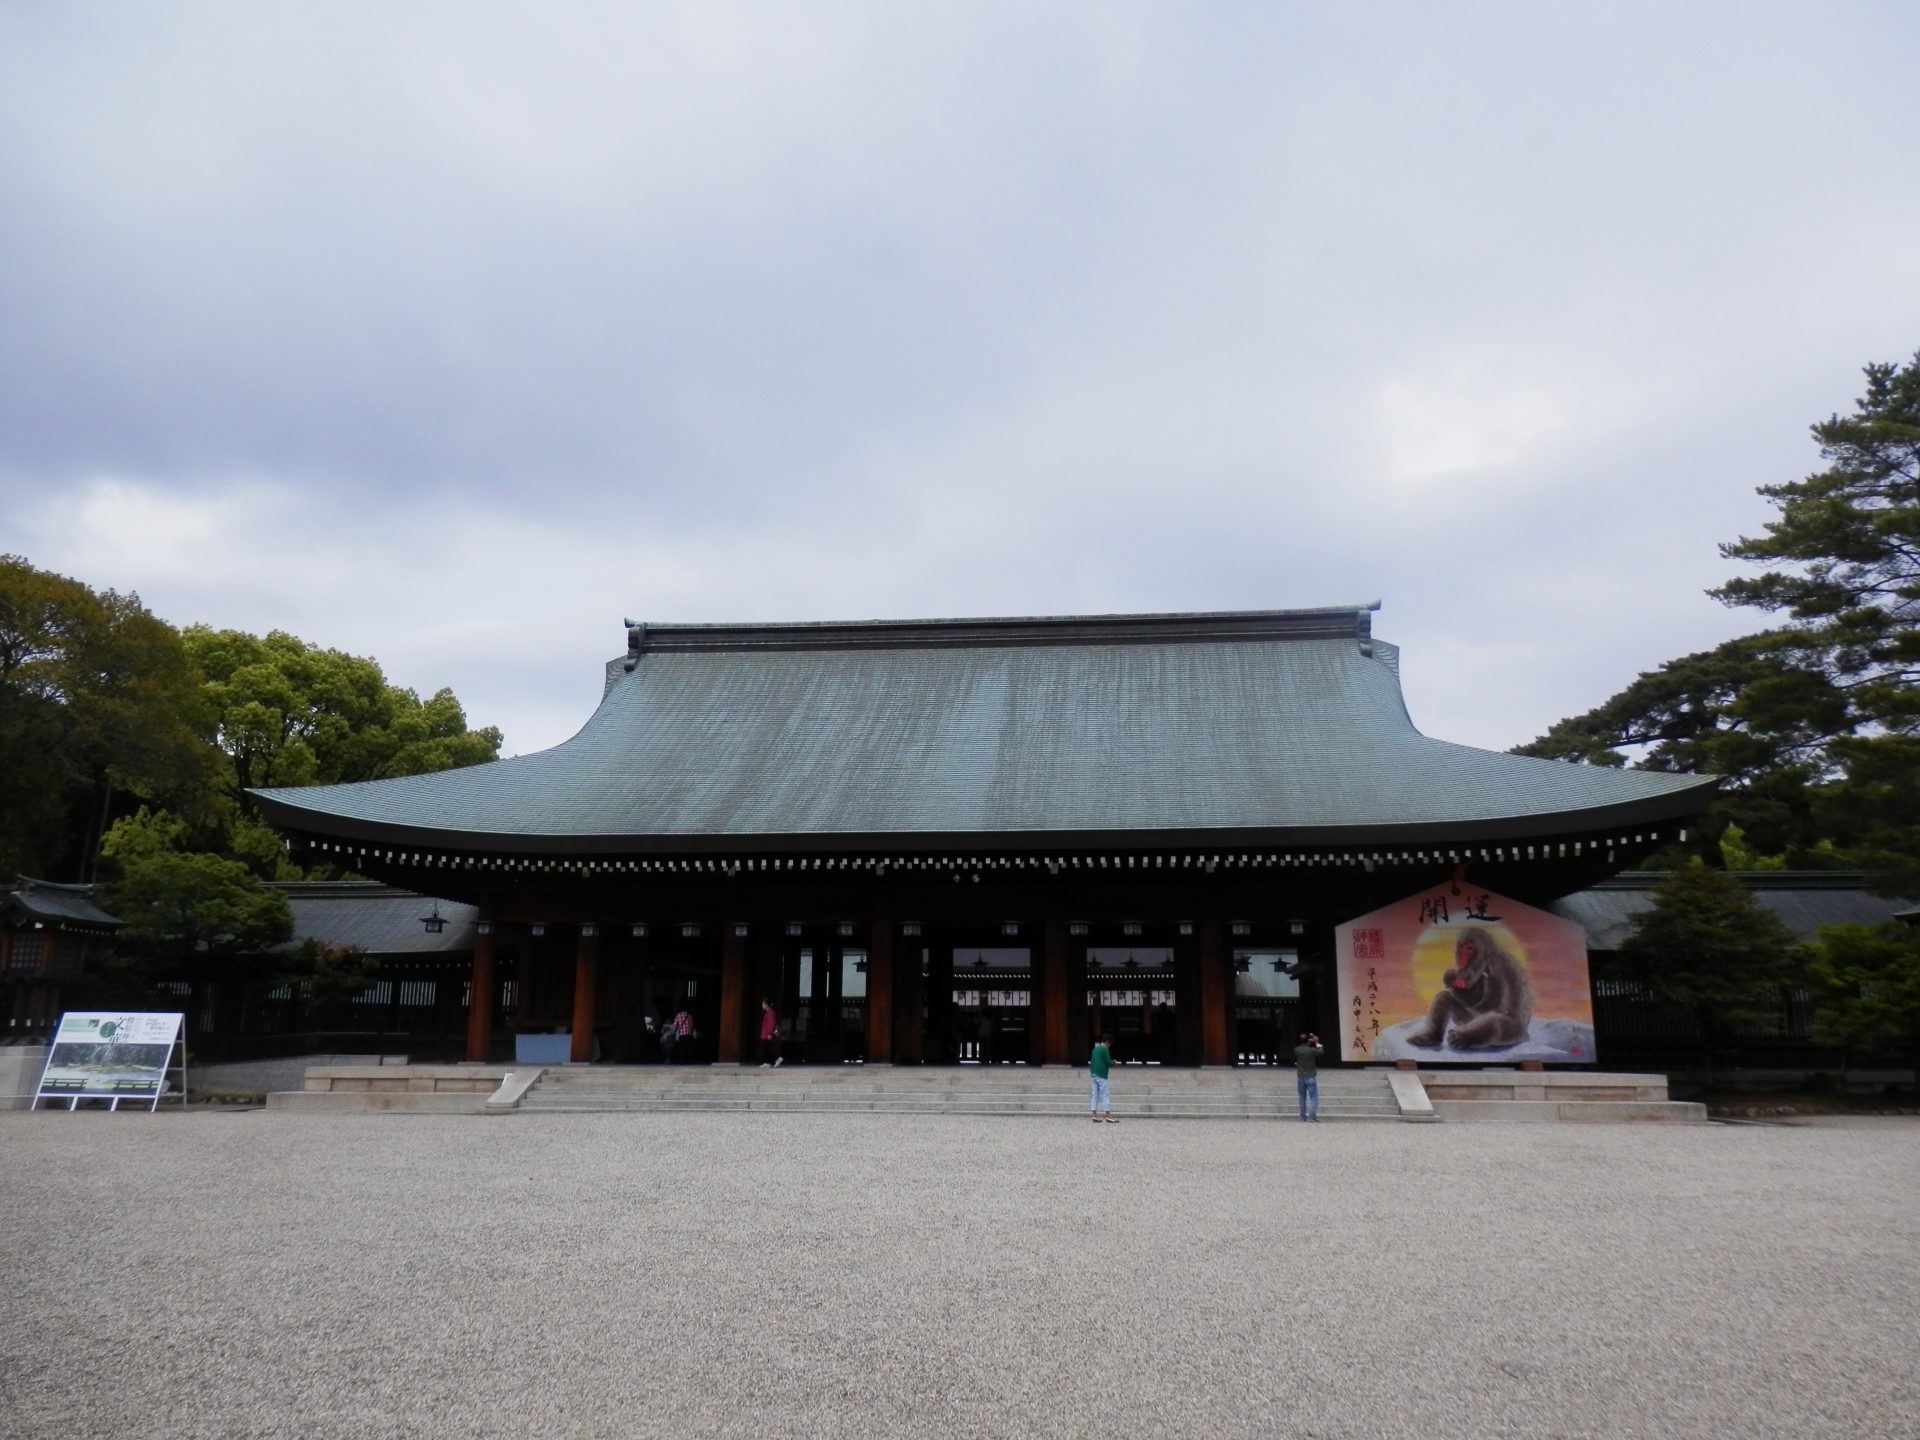 奈良の橿原神宮への行き方と参拝の所要時間と周辺観光スポットご紹介 お役立ち情報館